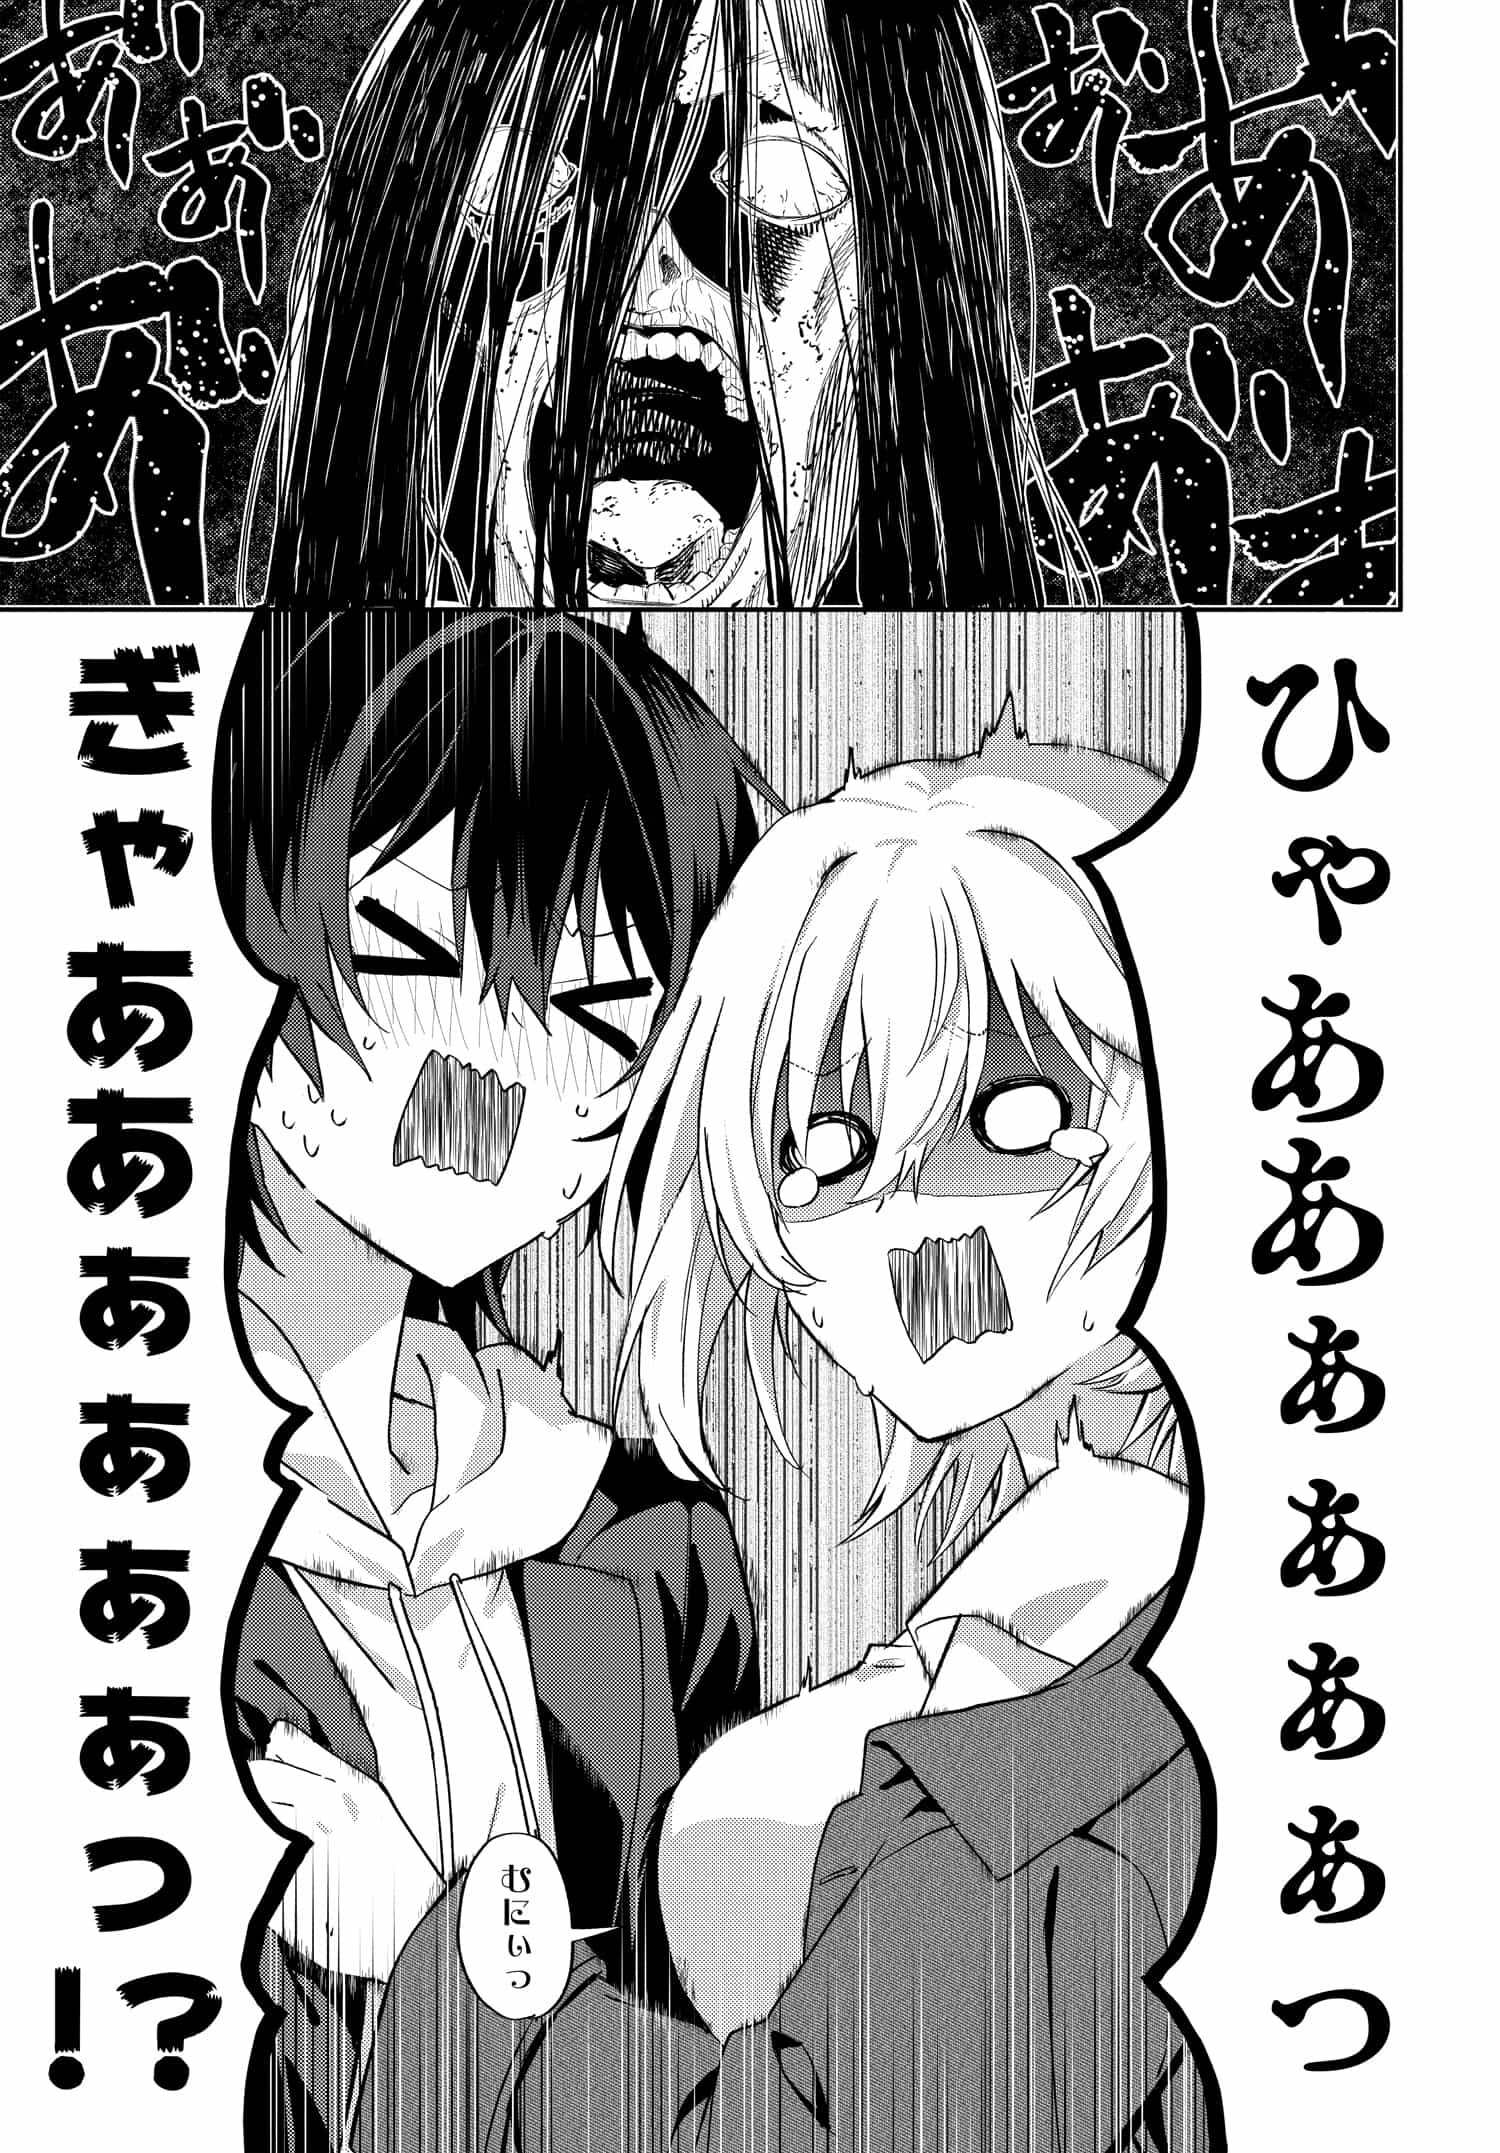 Romcom Manga ni Haitte Shimatta no de, Oshi no Make Heroine wo Zenryoku de Shiawase ni suru - Chapter 7.2 - Page 6